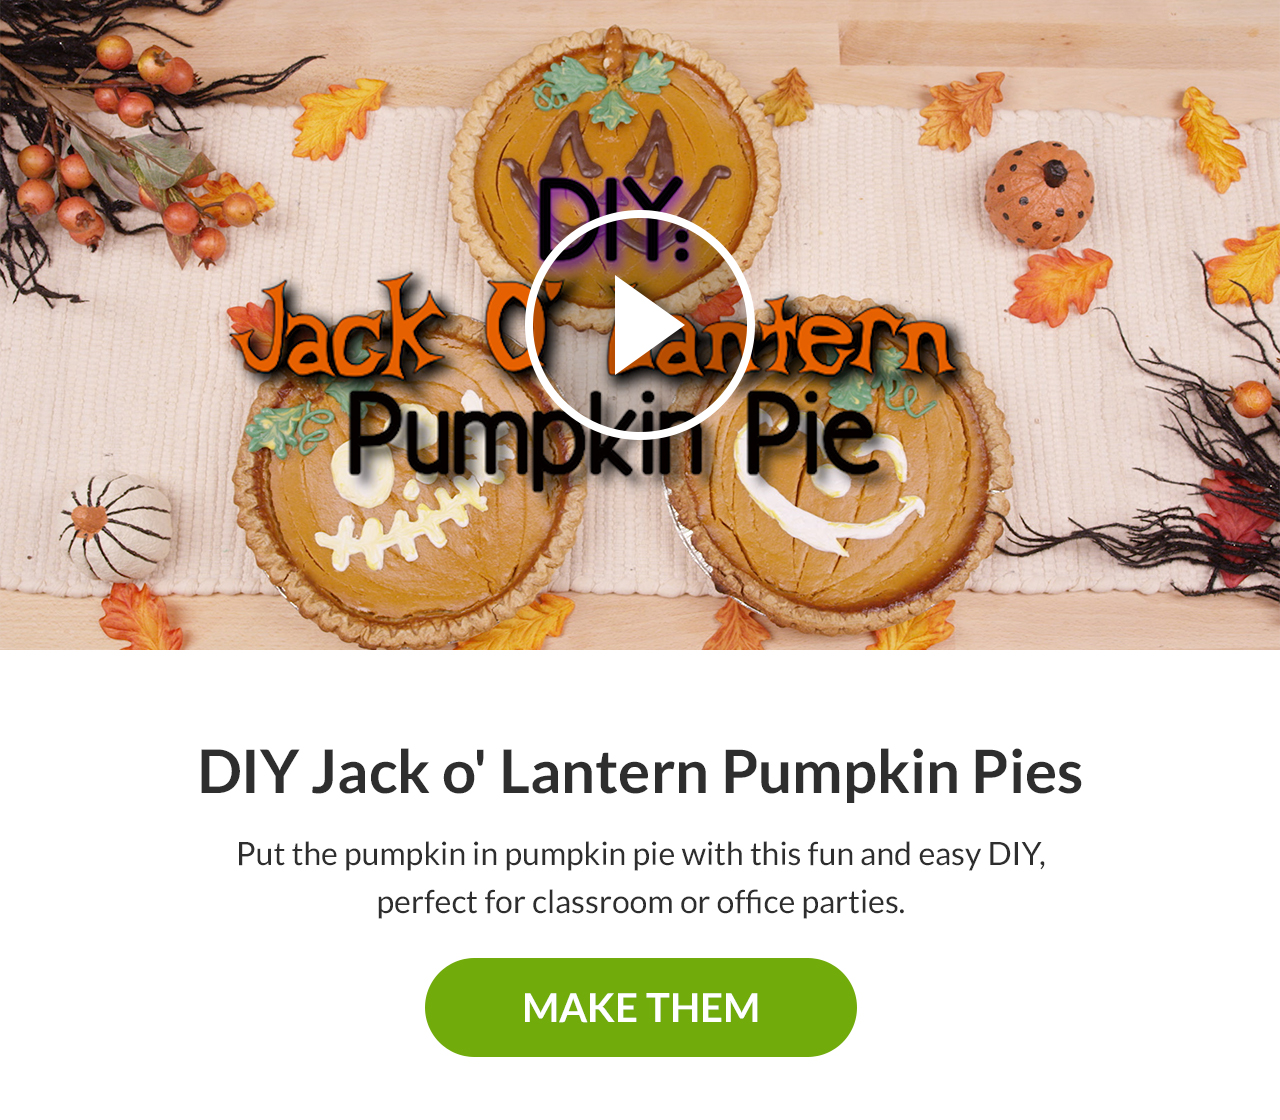 DIY Jack o' Lantern Pumpkin Pies. Make Them!